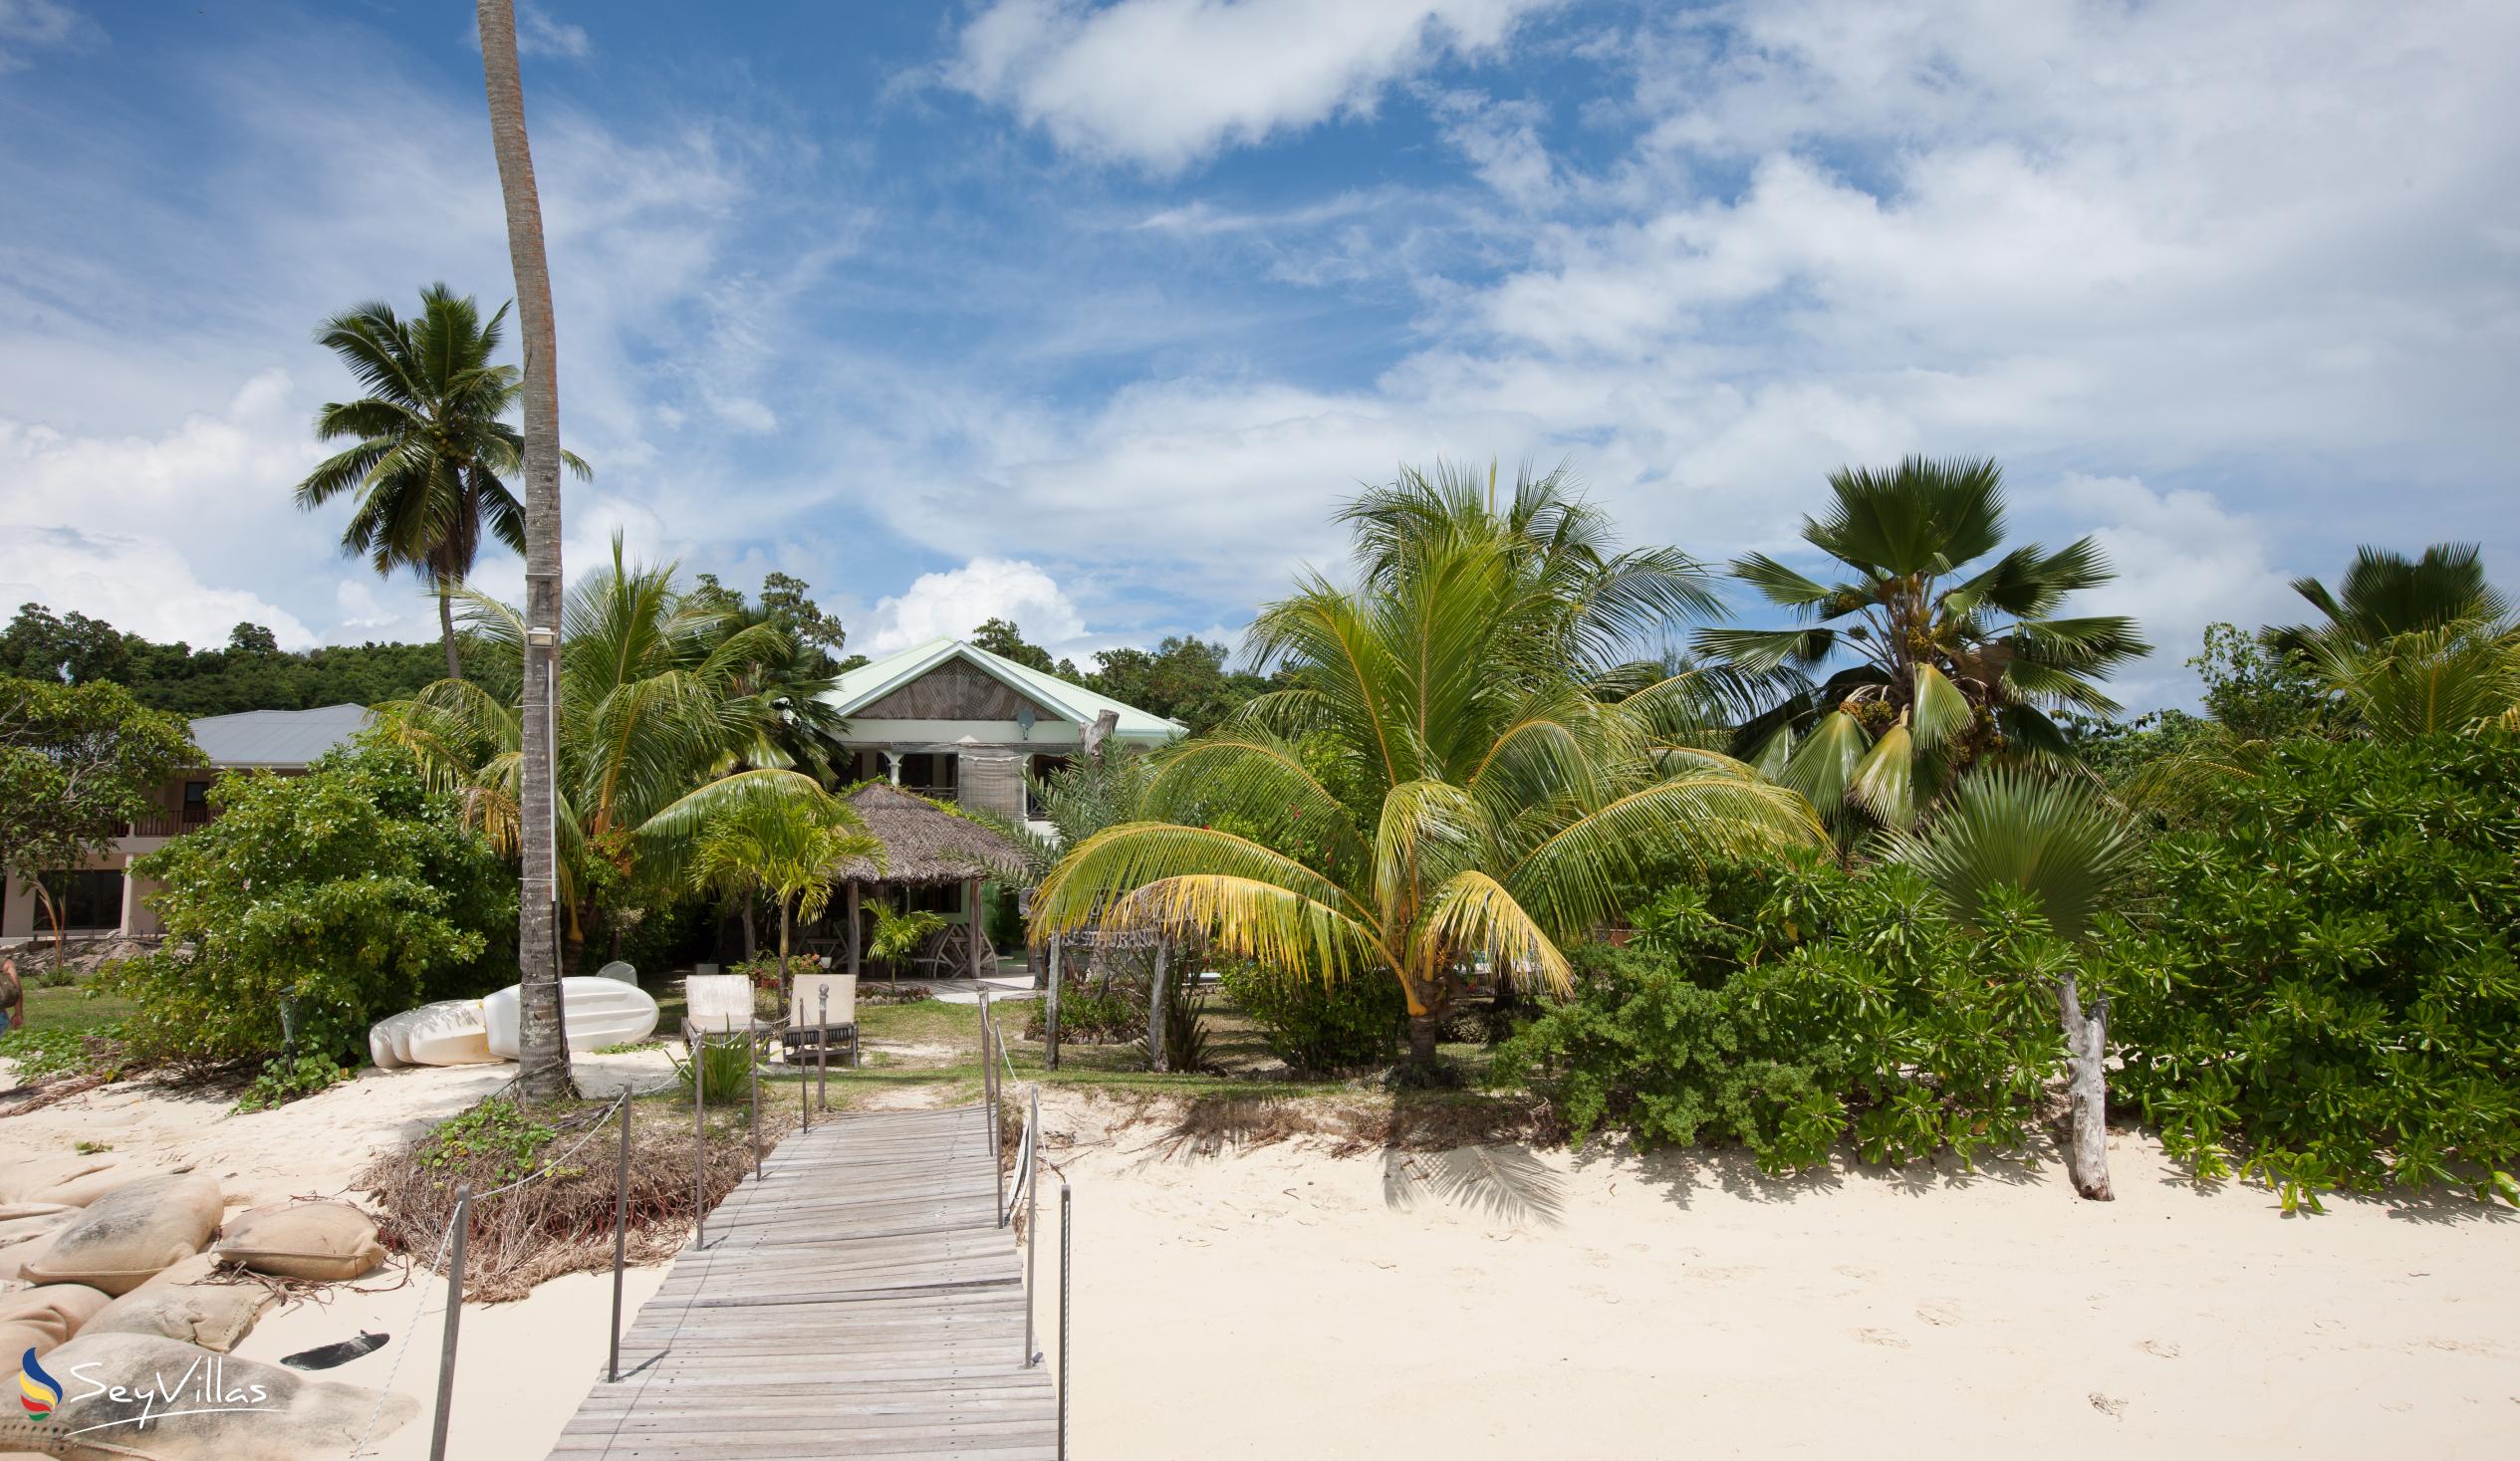 Foto 47: Villa de Cerf - Esterno - Cerf Island (Seychelles)